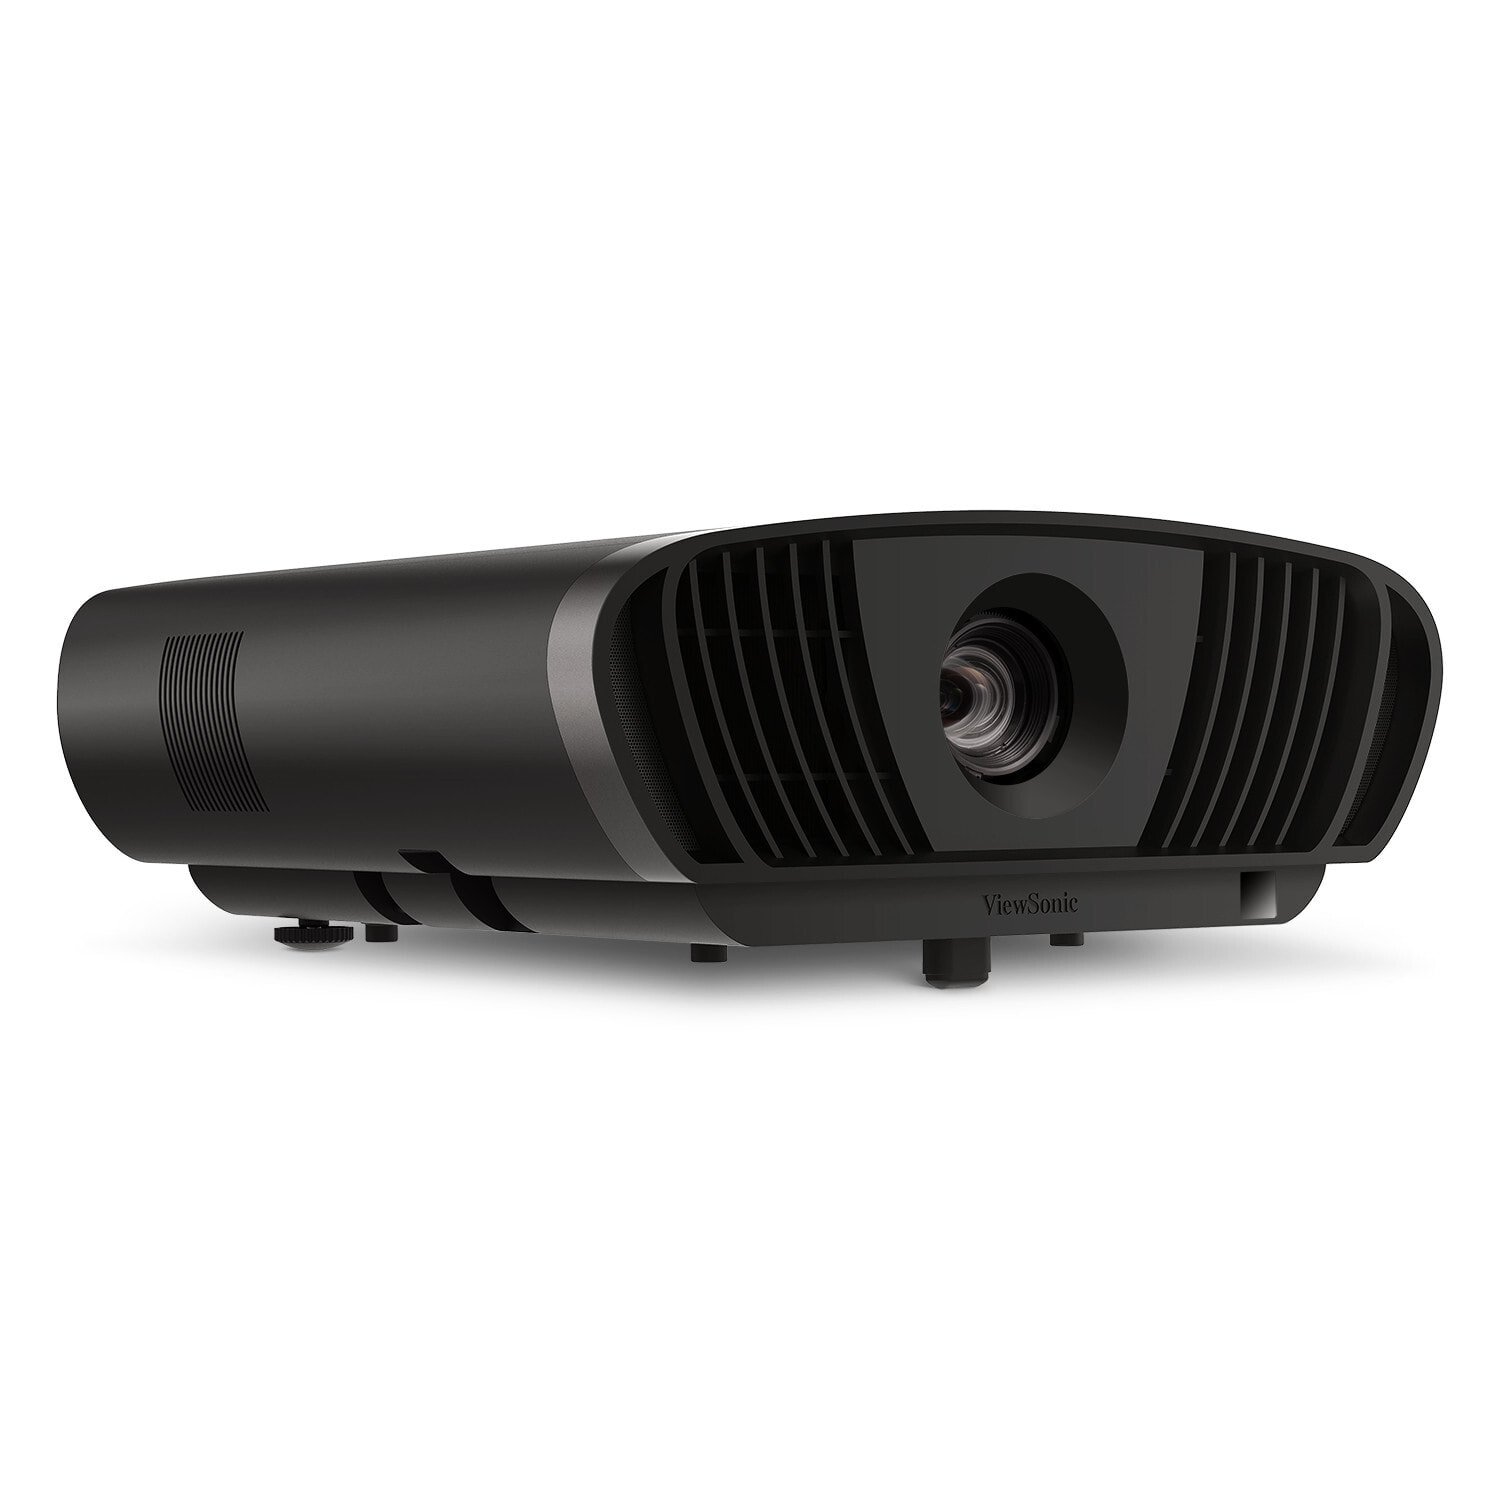 Viewsonic X100-4K мультимедиа-проектор 2900 лм DLP 2160p (3840x2160) Настольный проектор Черный